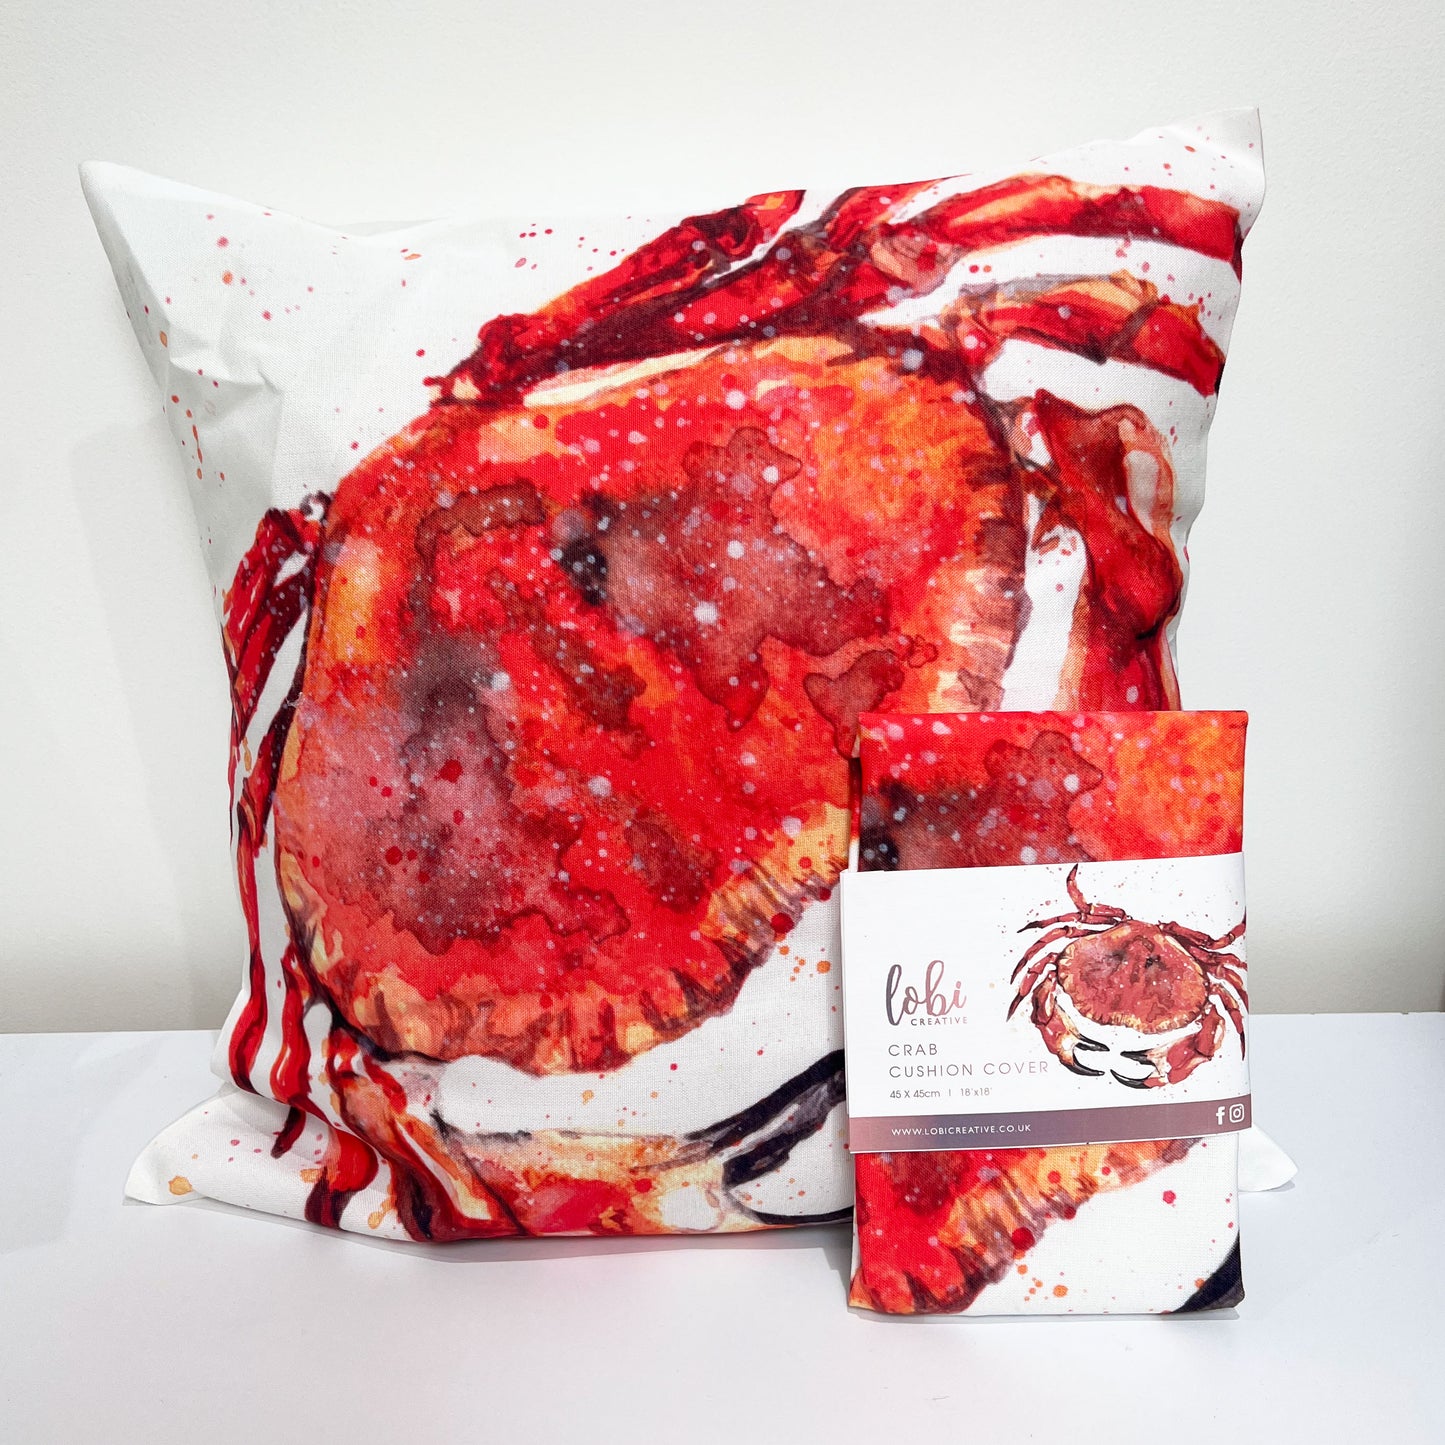 Crab cushion cover